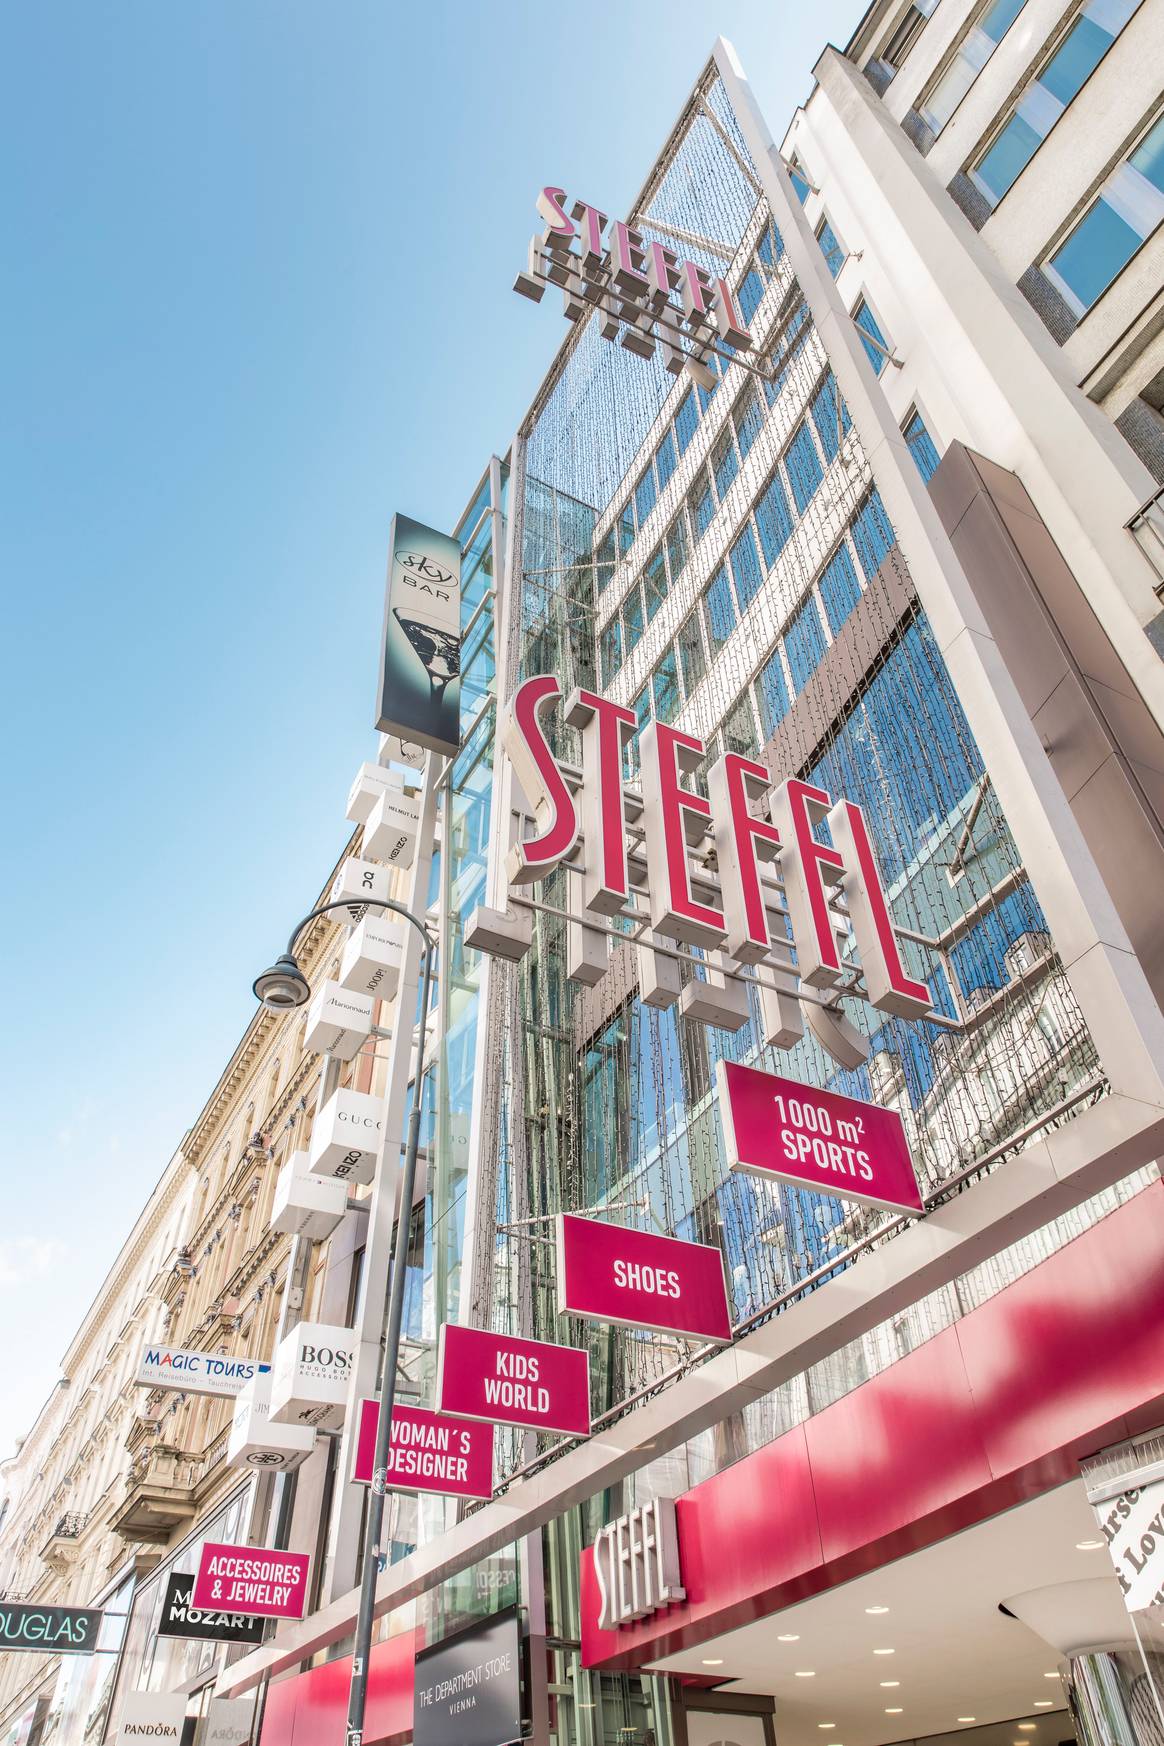 Steffl tiene una ubicación céntrica en la calle comercial Kärntnerstrasse de Viena.